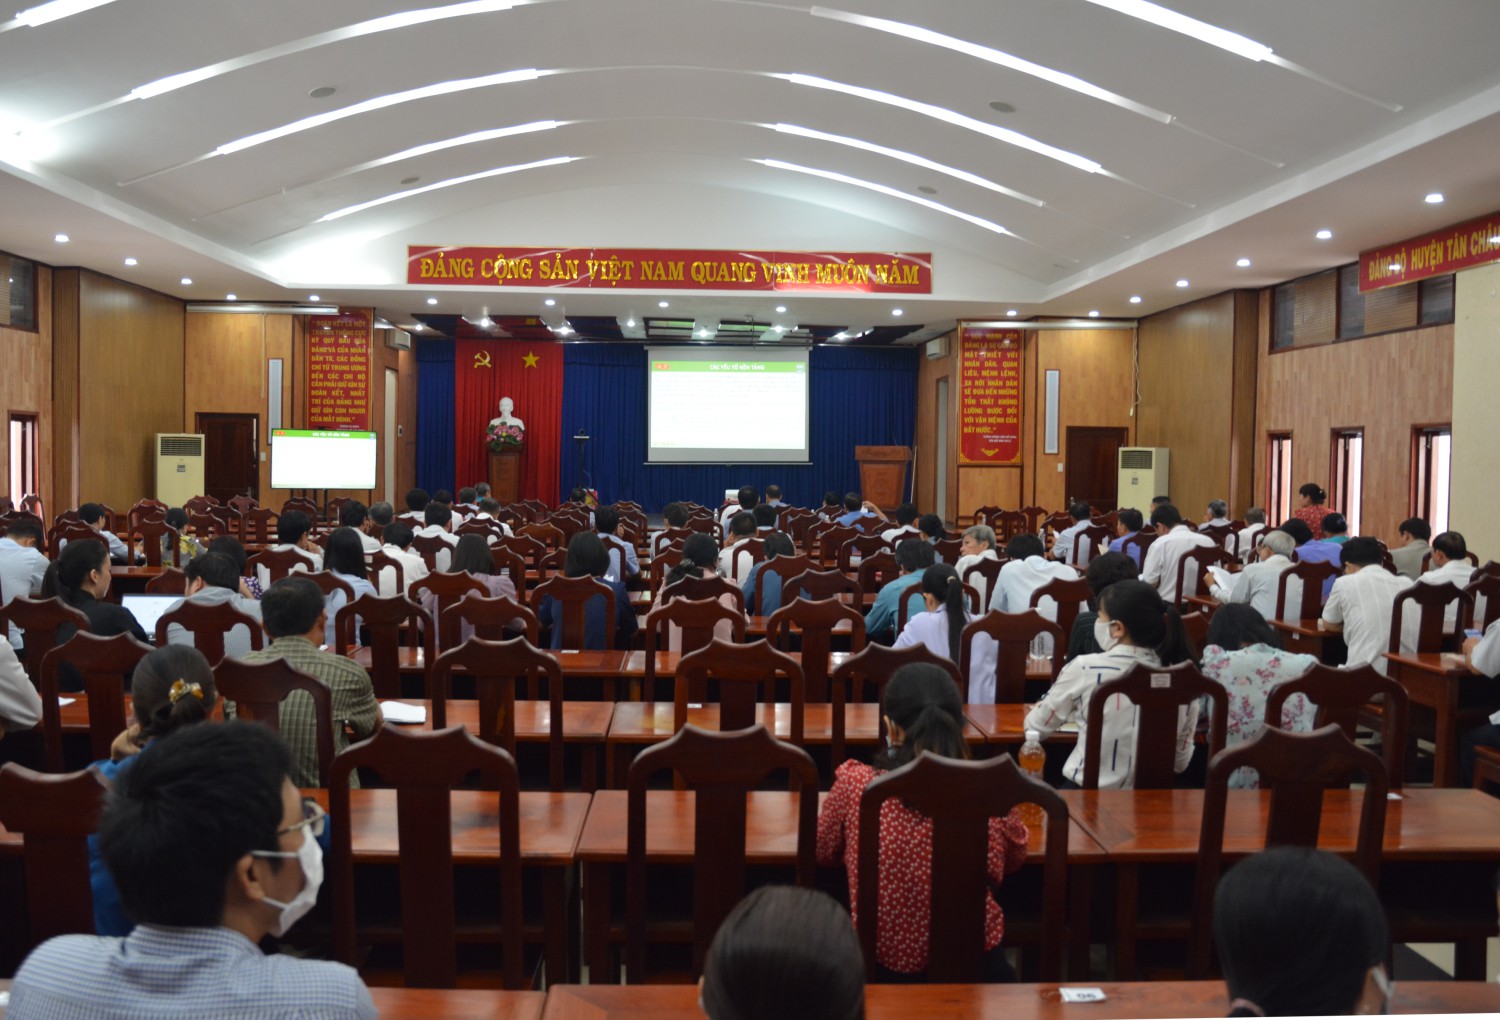 Huyện ủy Tân Châu tham dự hội nghị trực tuyến toàn quốc nghiên cứu học tập, quán triệt, tuyên truyền nghị quyết hội nghị lần thứ 5 Ban chấp hành Trung Đảng khóa XIII